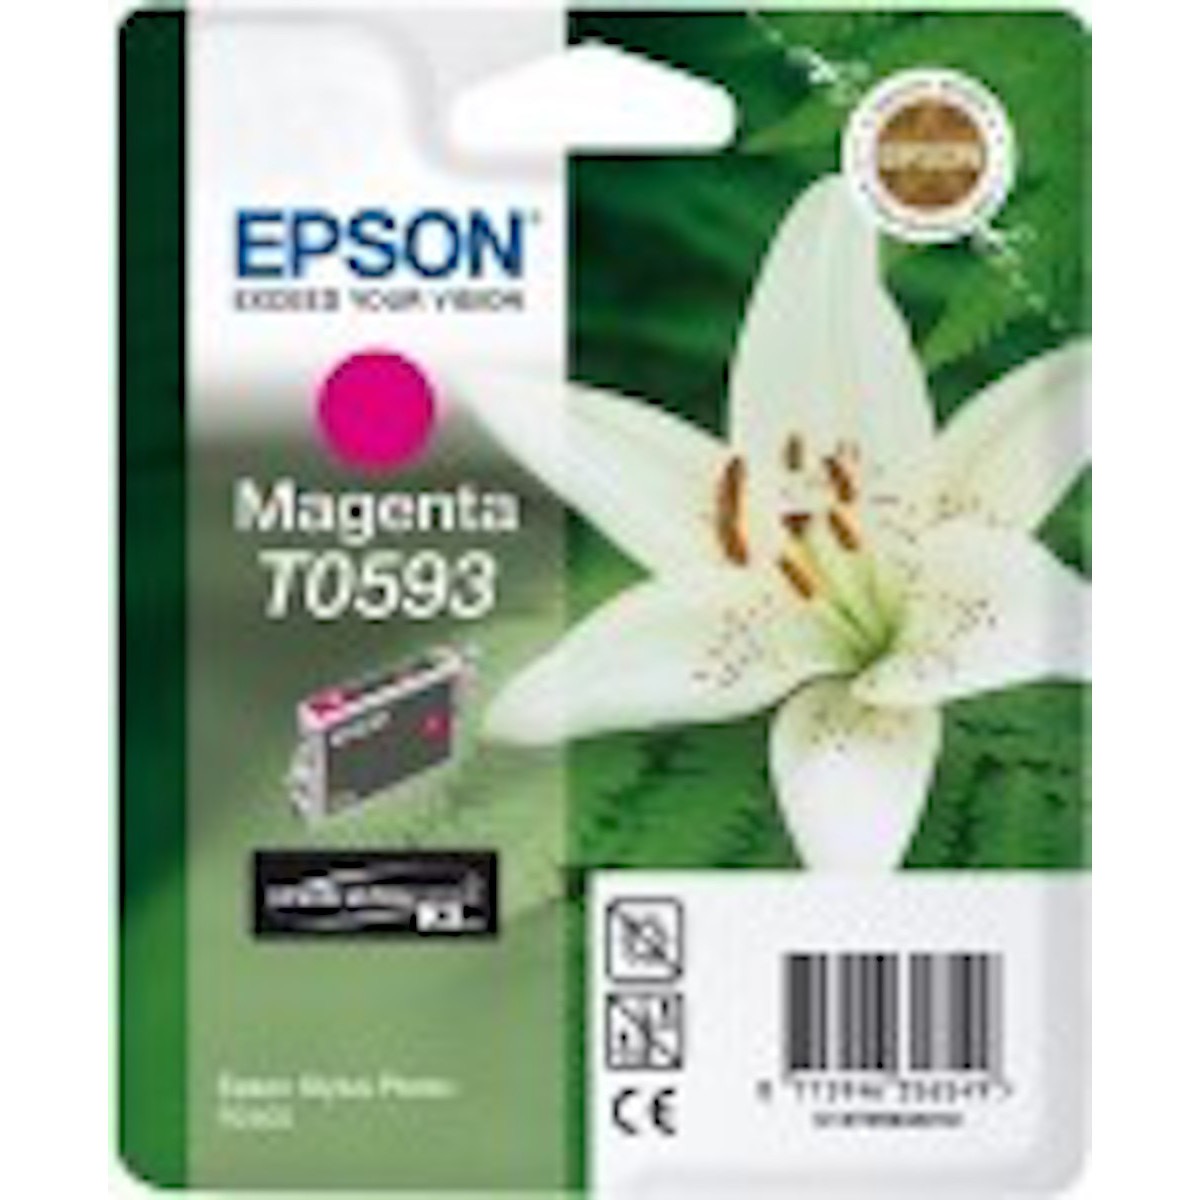 Epson T0593 magenta Tinte